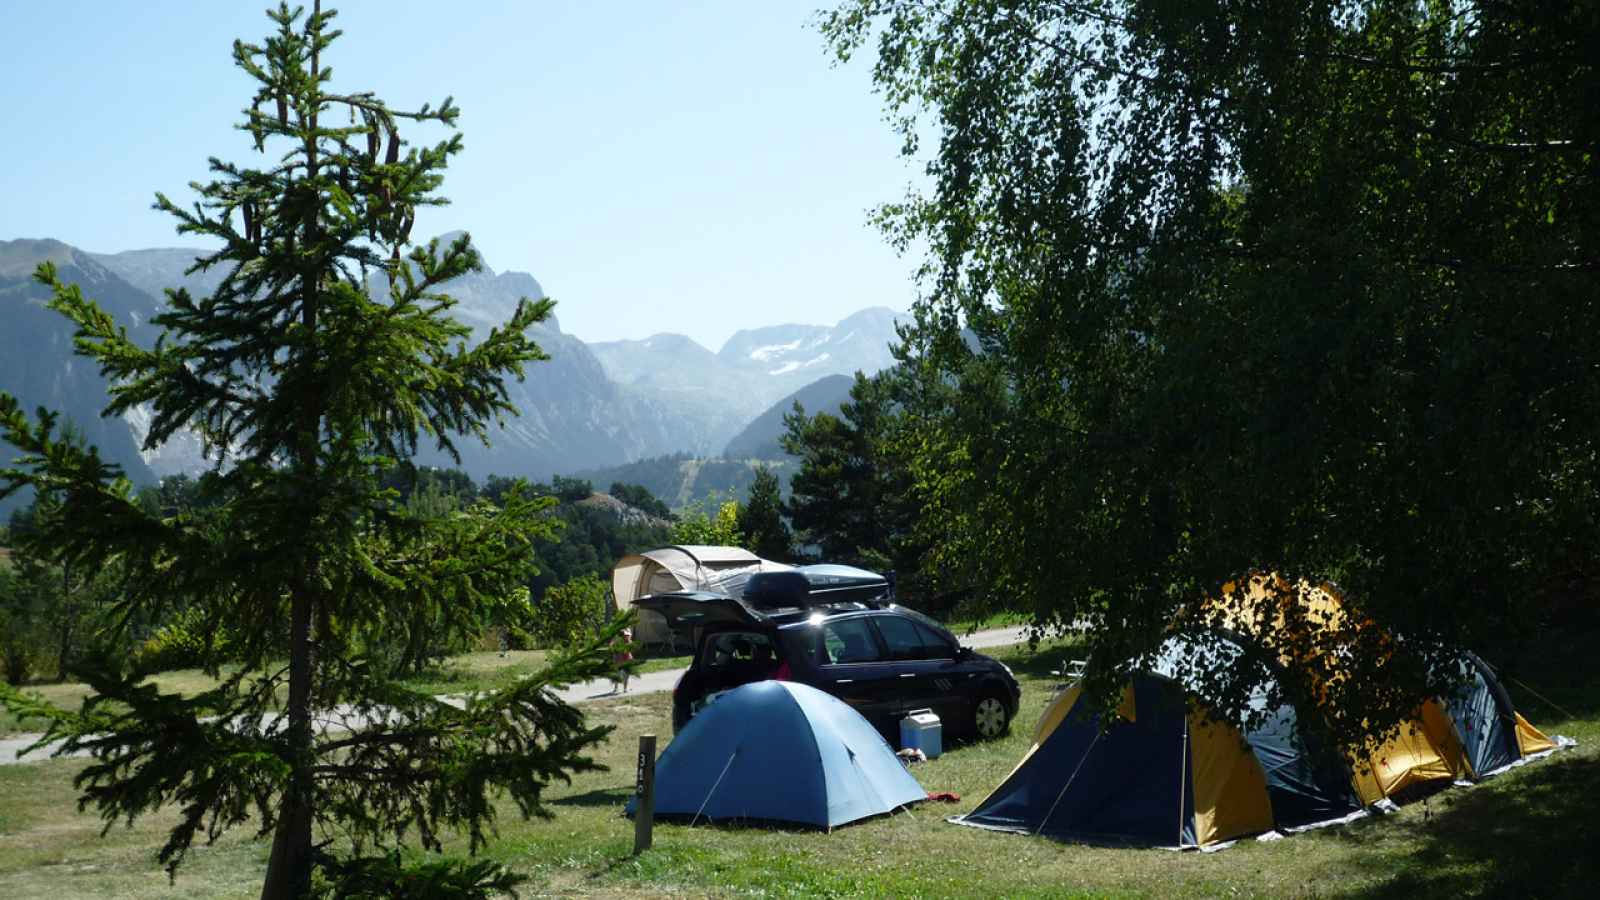 Camping-caravaneige municipal 3 étoiles à Aussois, ouvert toute l'année